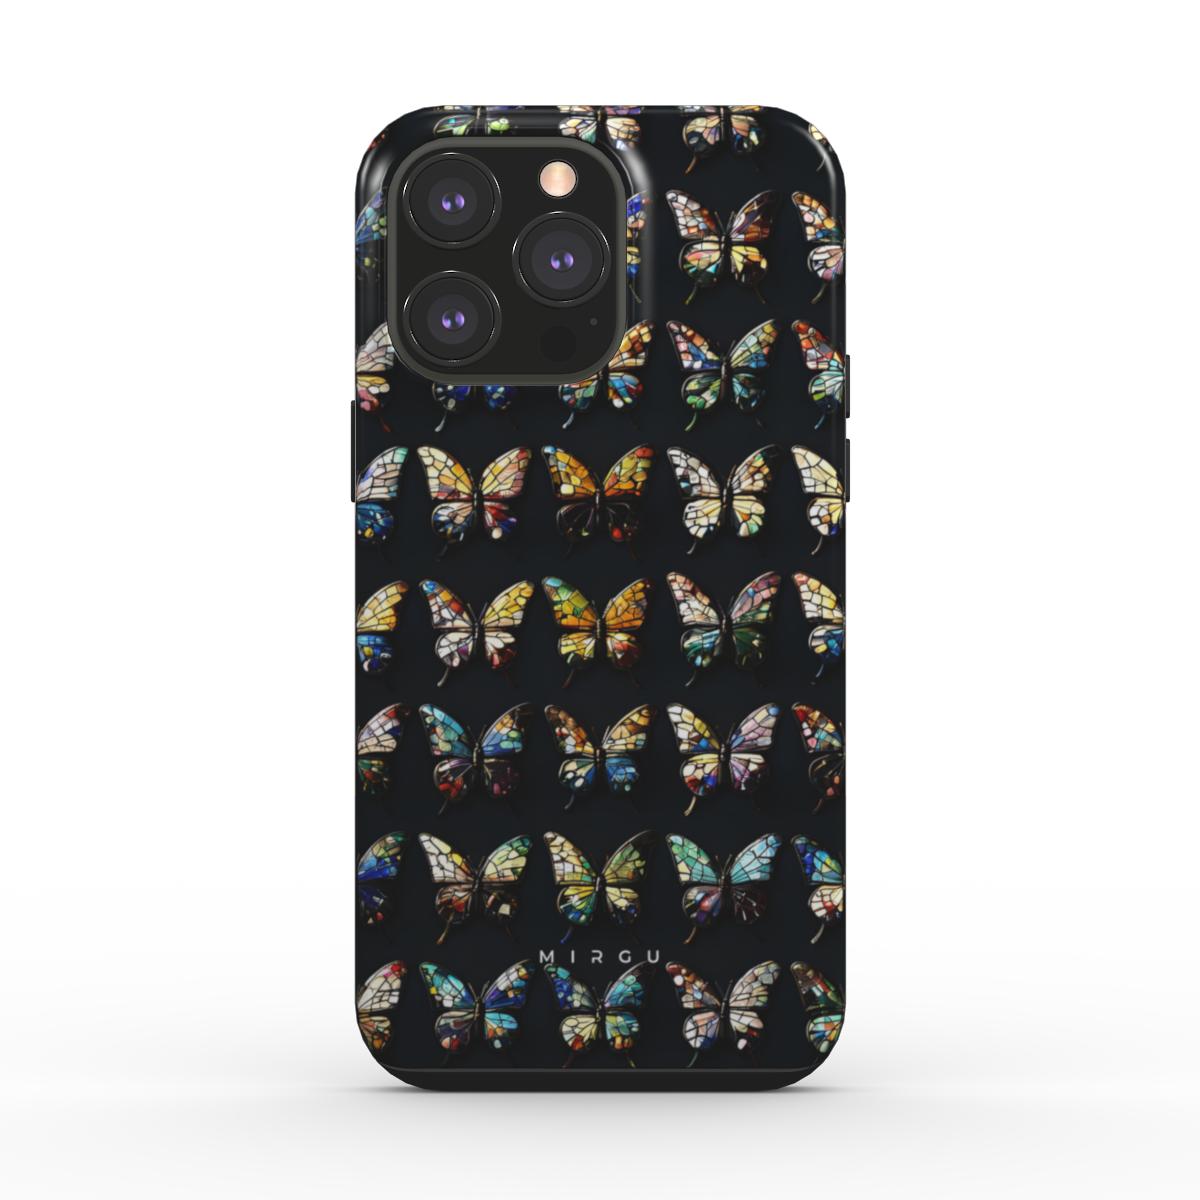 Glass Mosaic Butterflies - Tough Phone Case